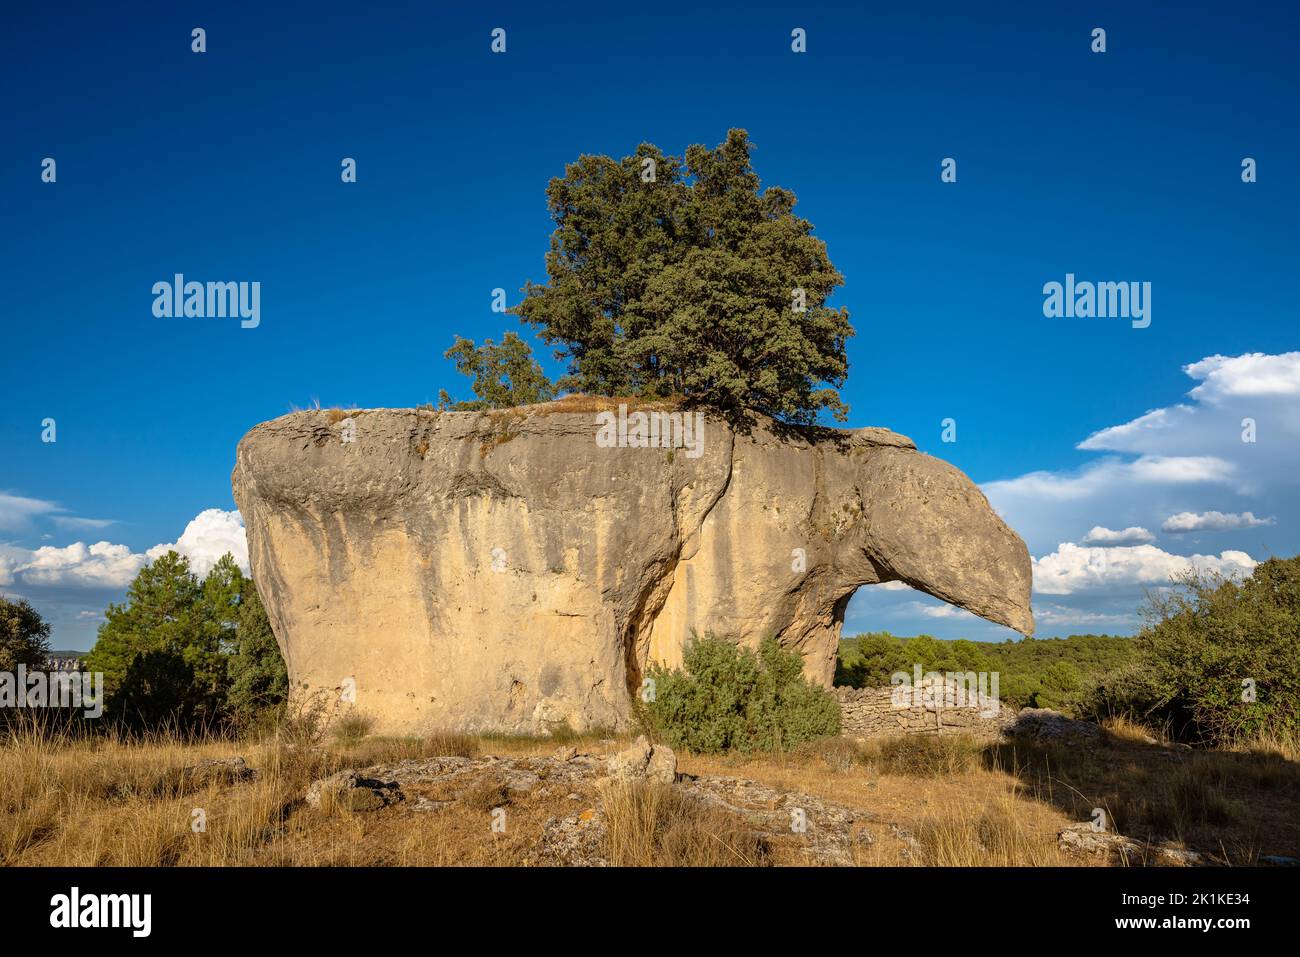 Strange rock formation known as Piedra del Yunque in the Serrania de Cuenca, Spain Stock Photo